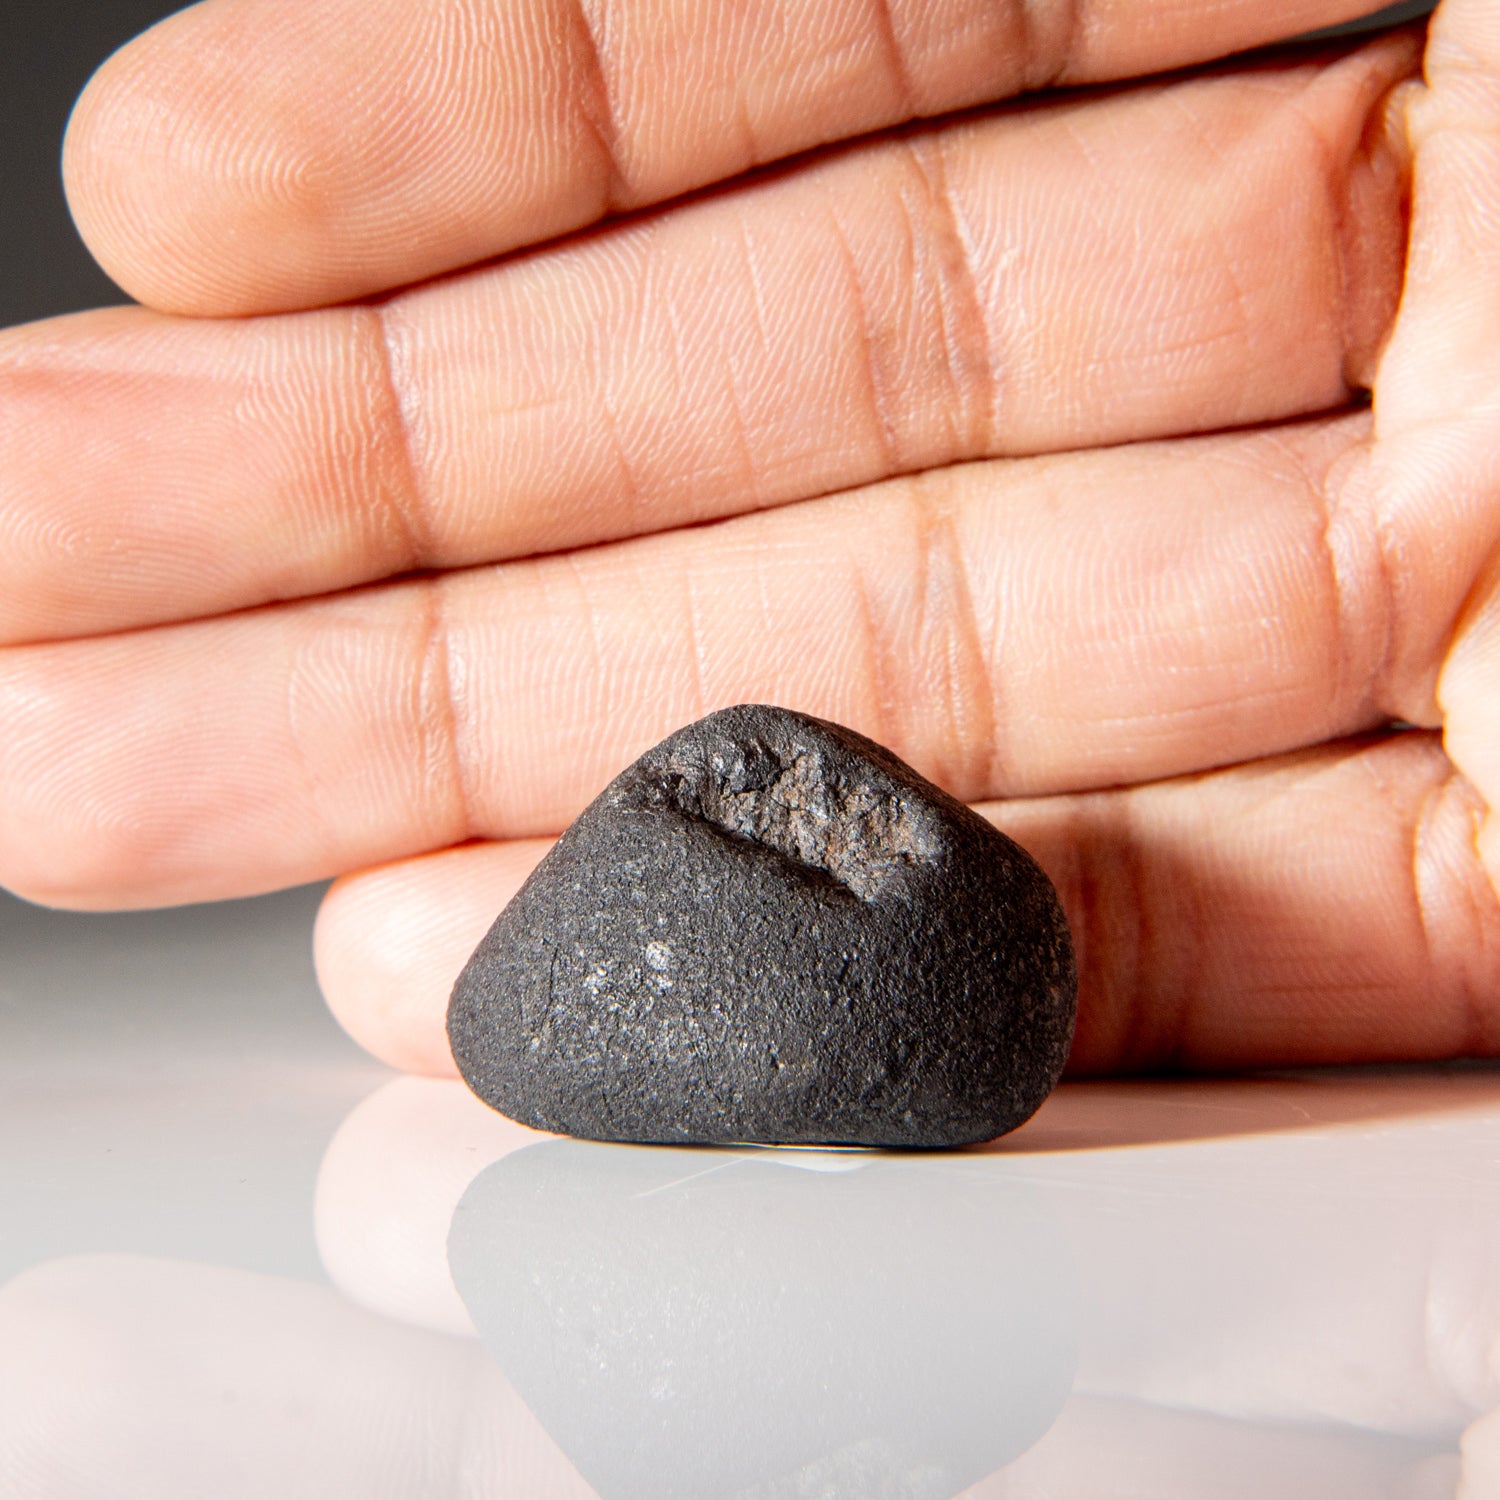 Genuine Chelyabinsk Meteorite (20.5 grams)